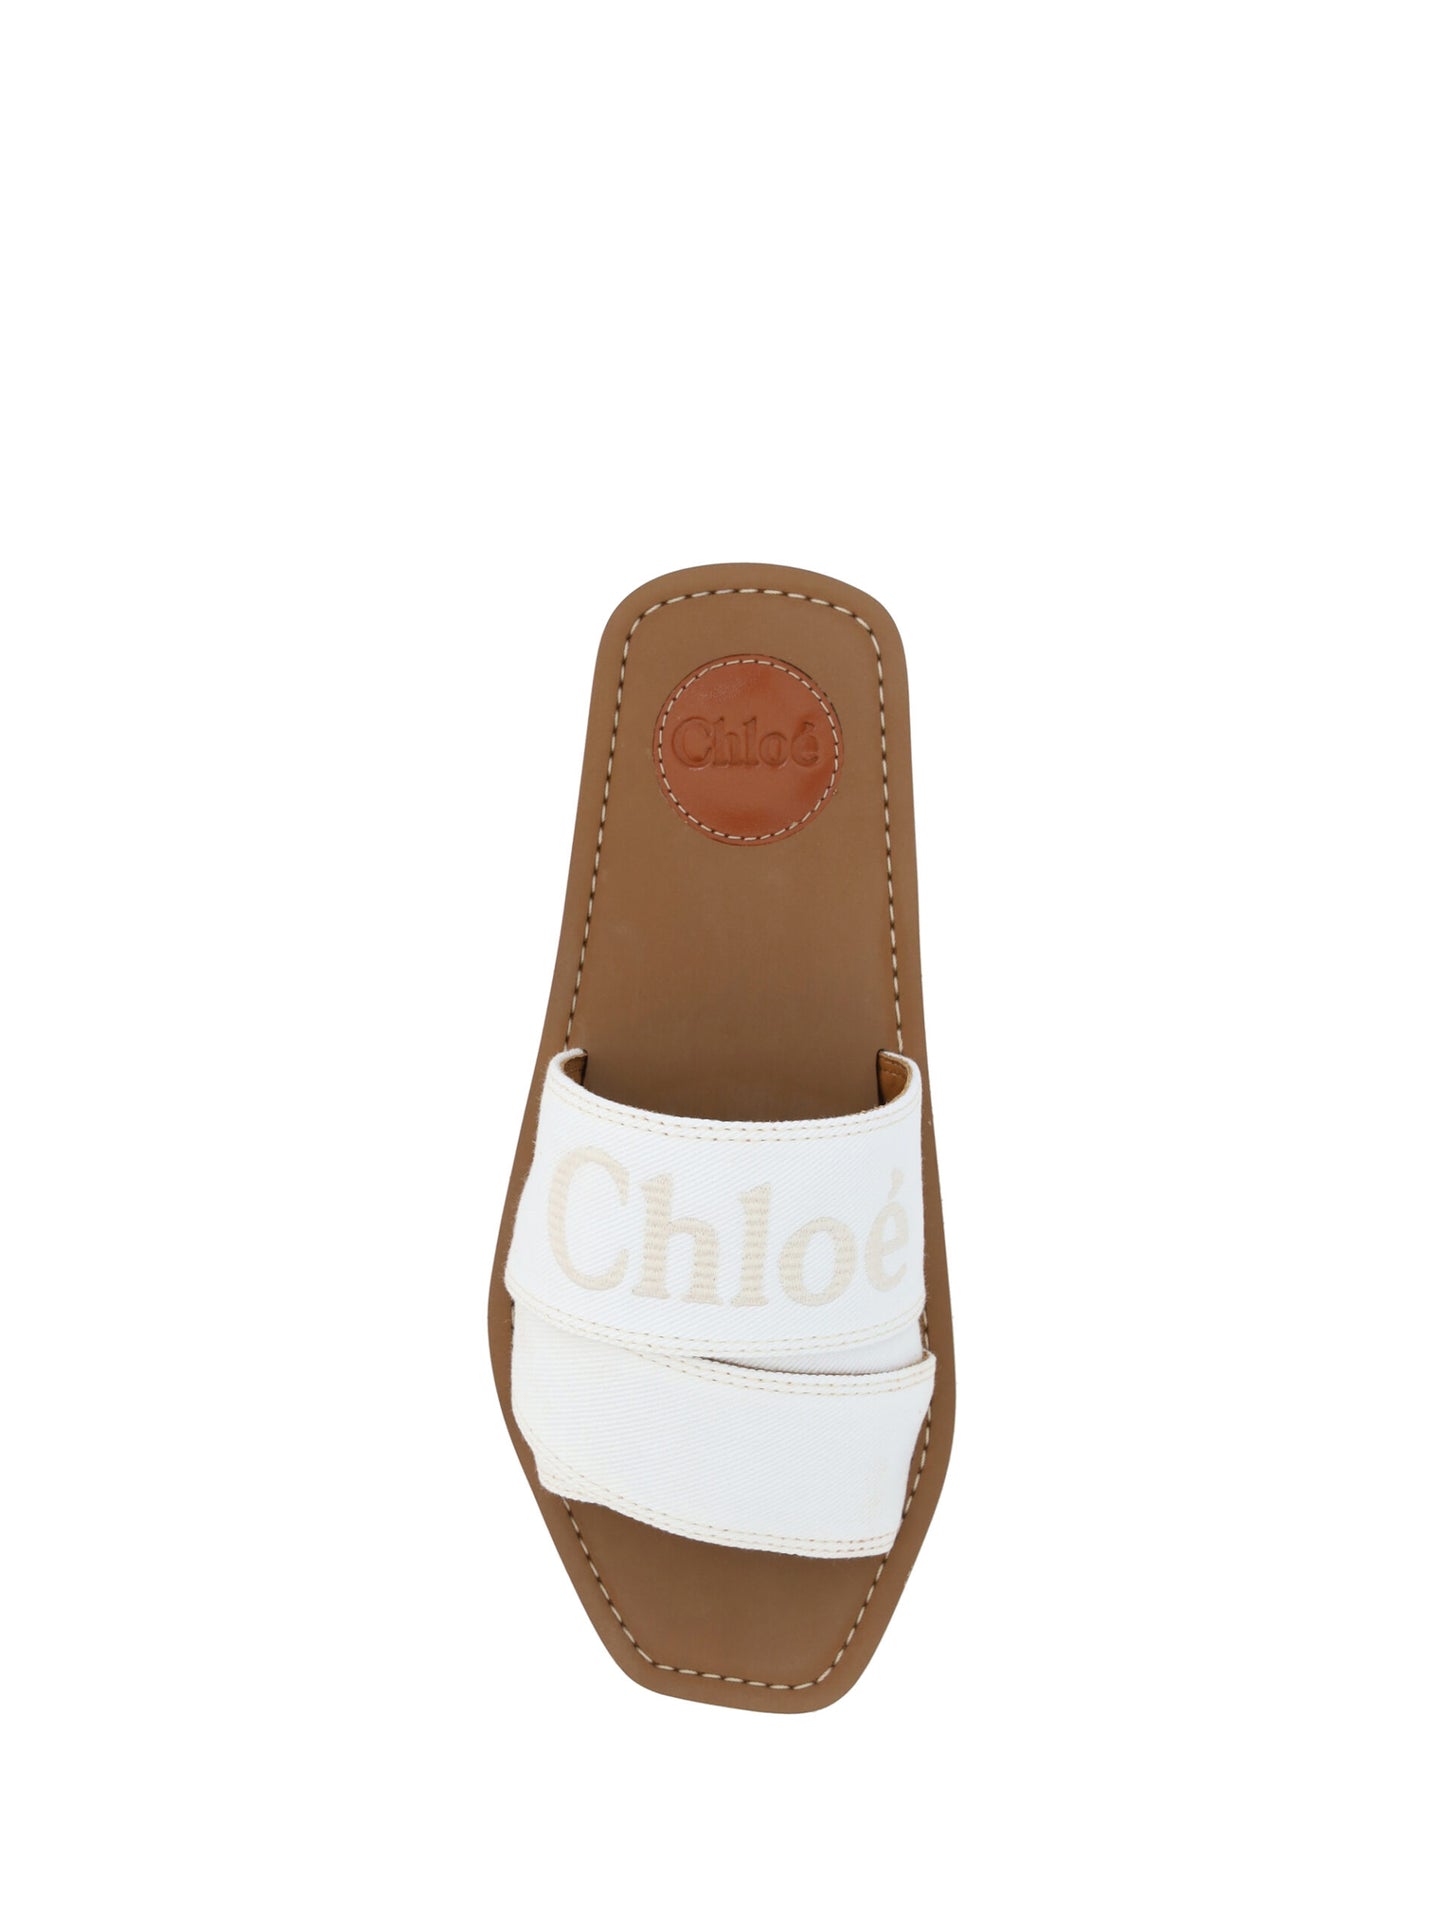 Elegant White Cotton Slide Sandals